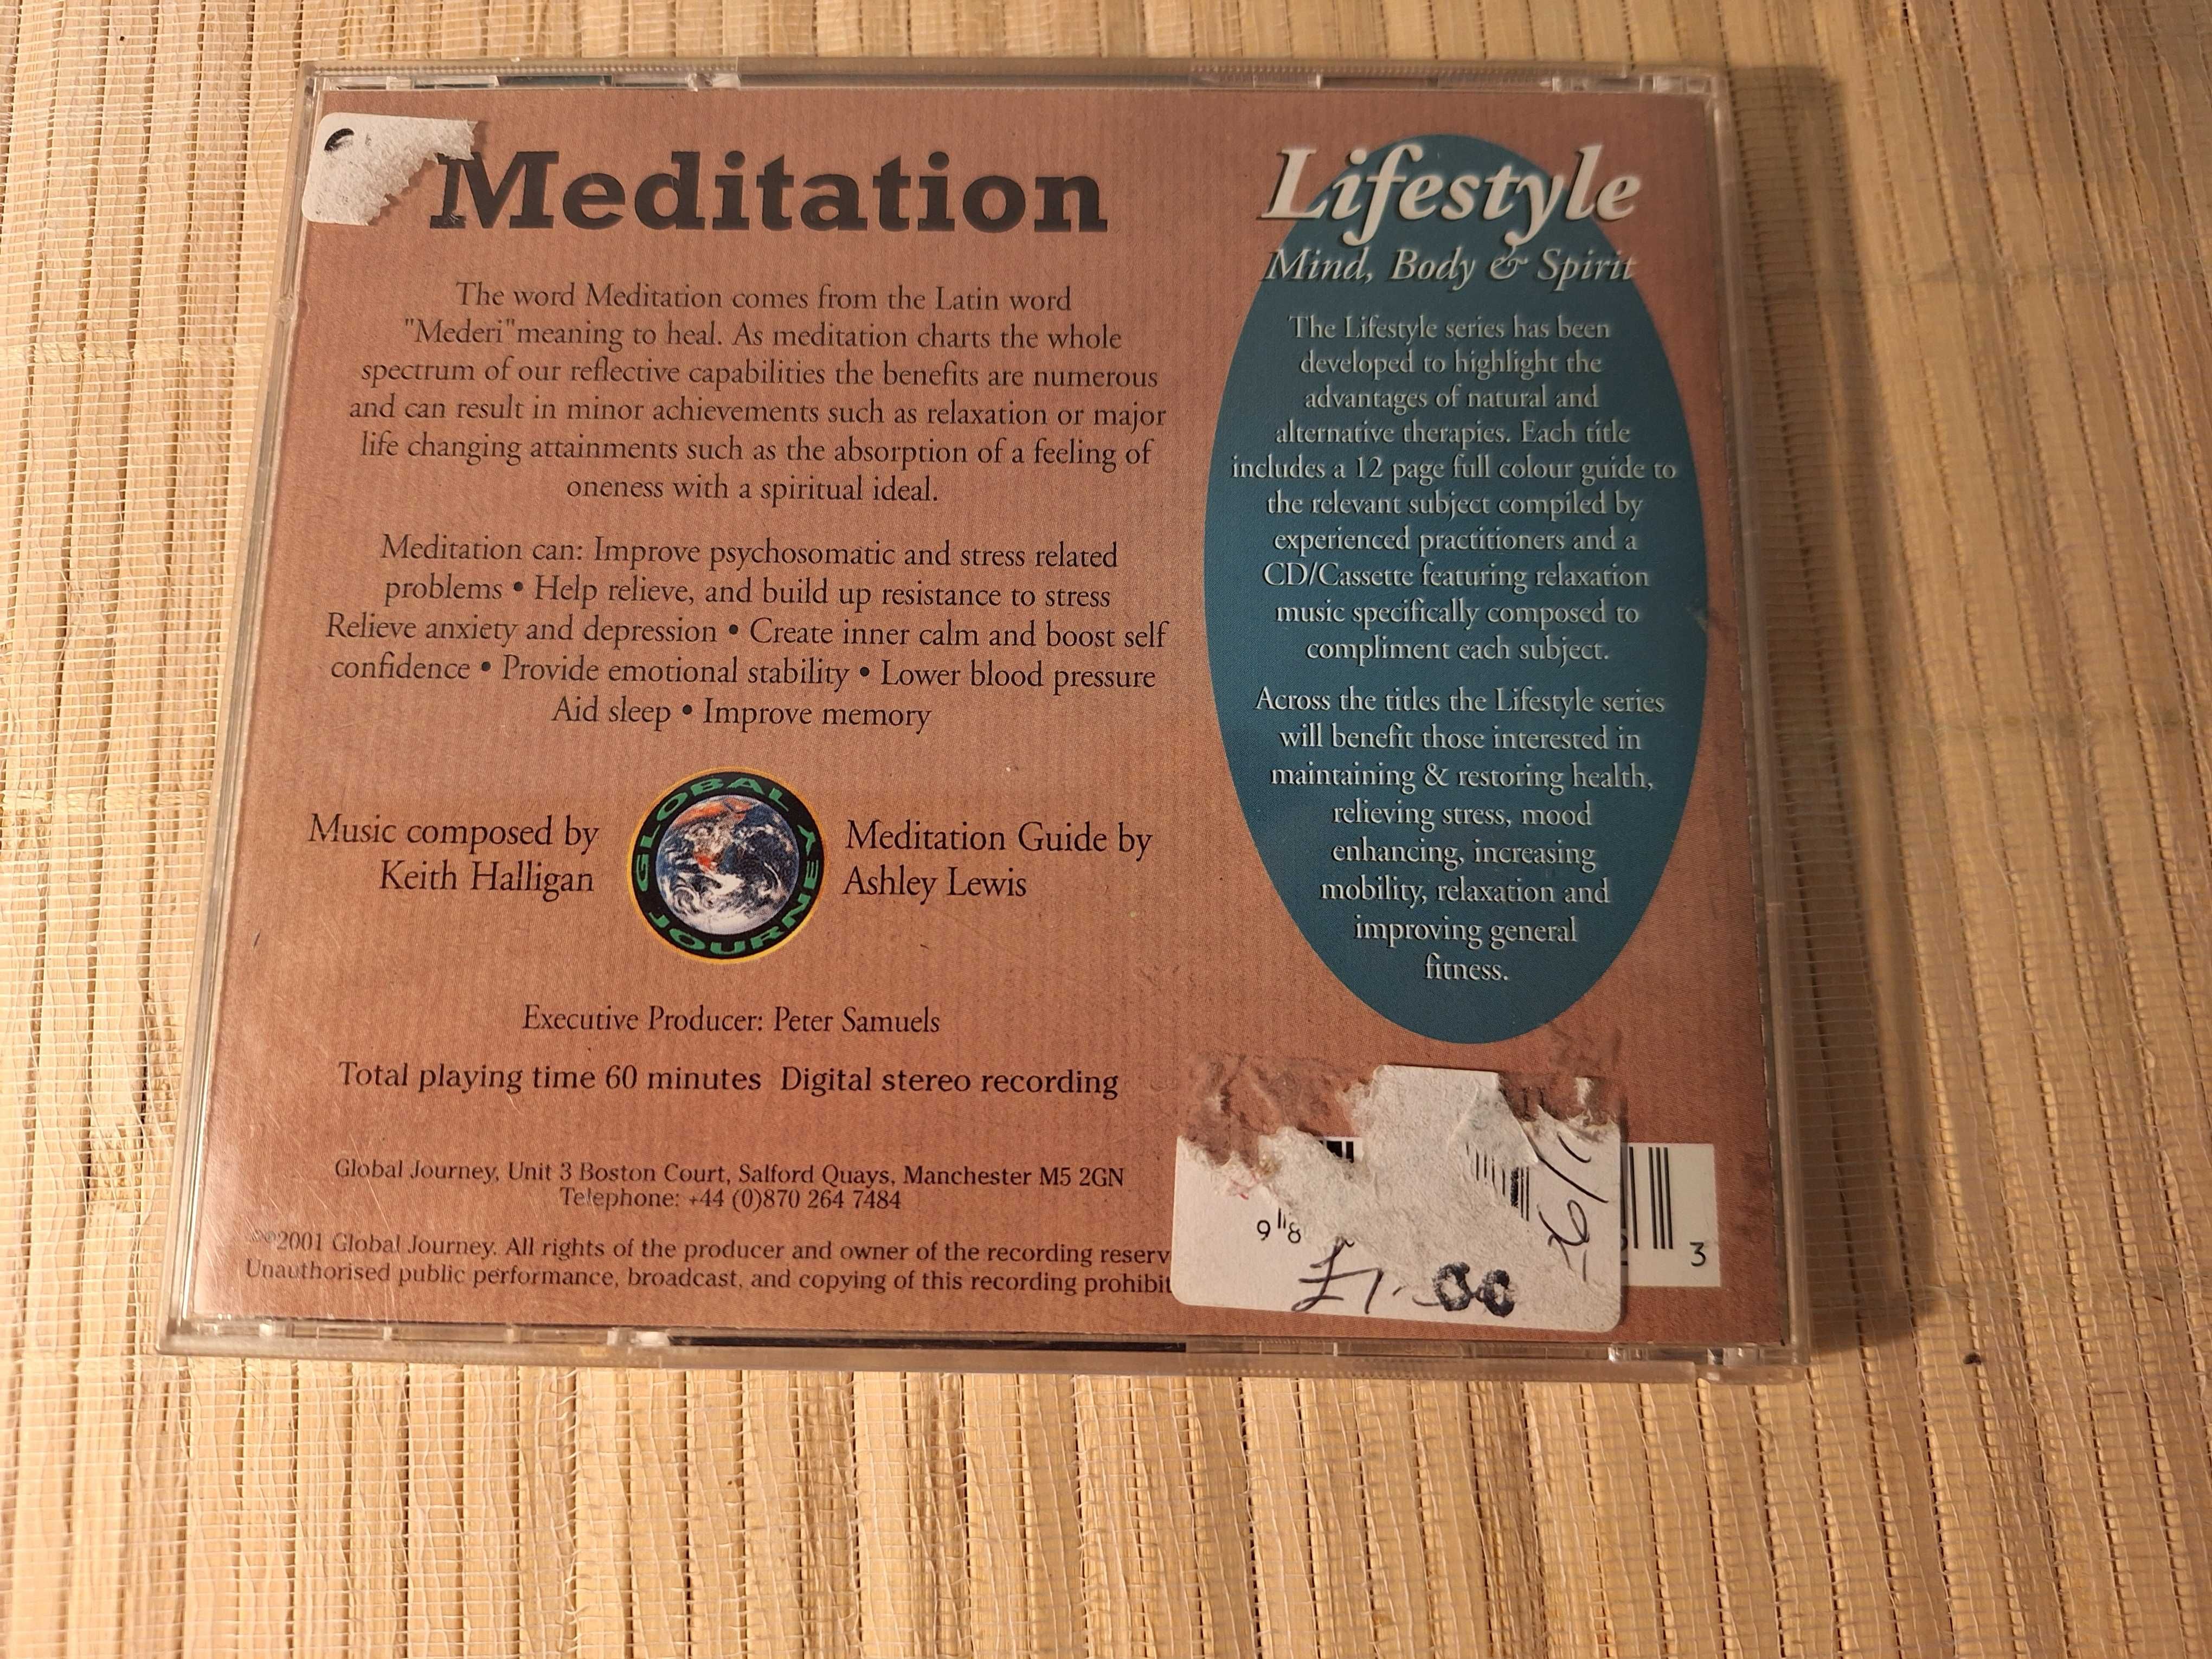 Meditation CD muzyka medytacyjna płyta do medytacji